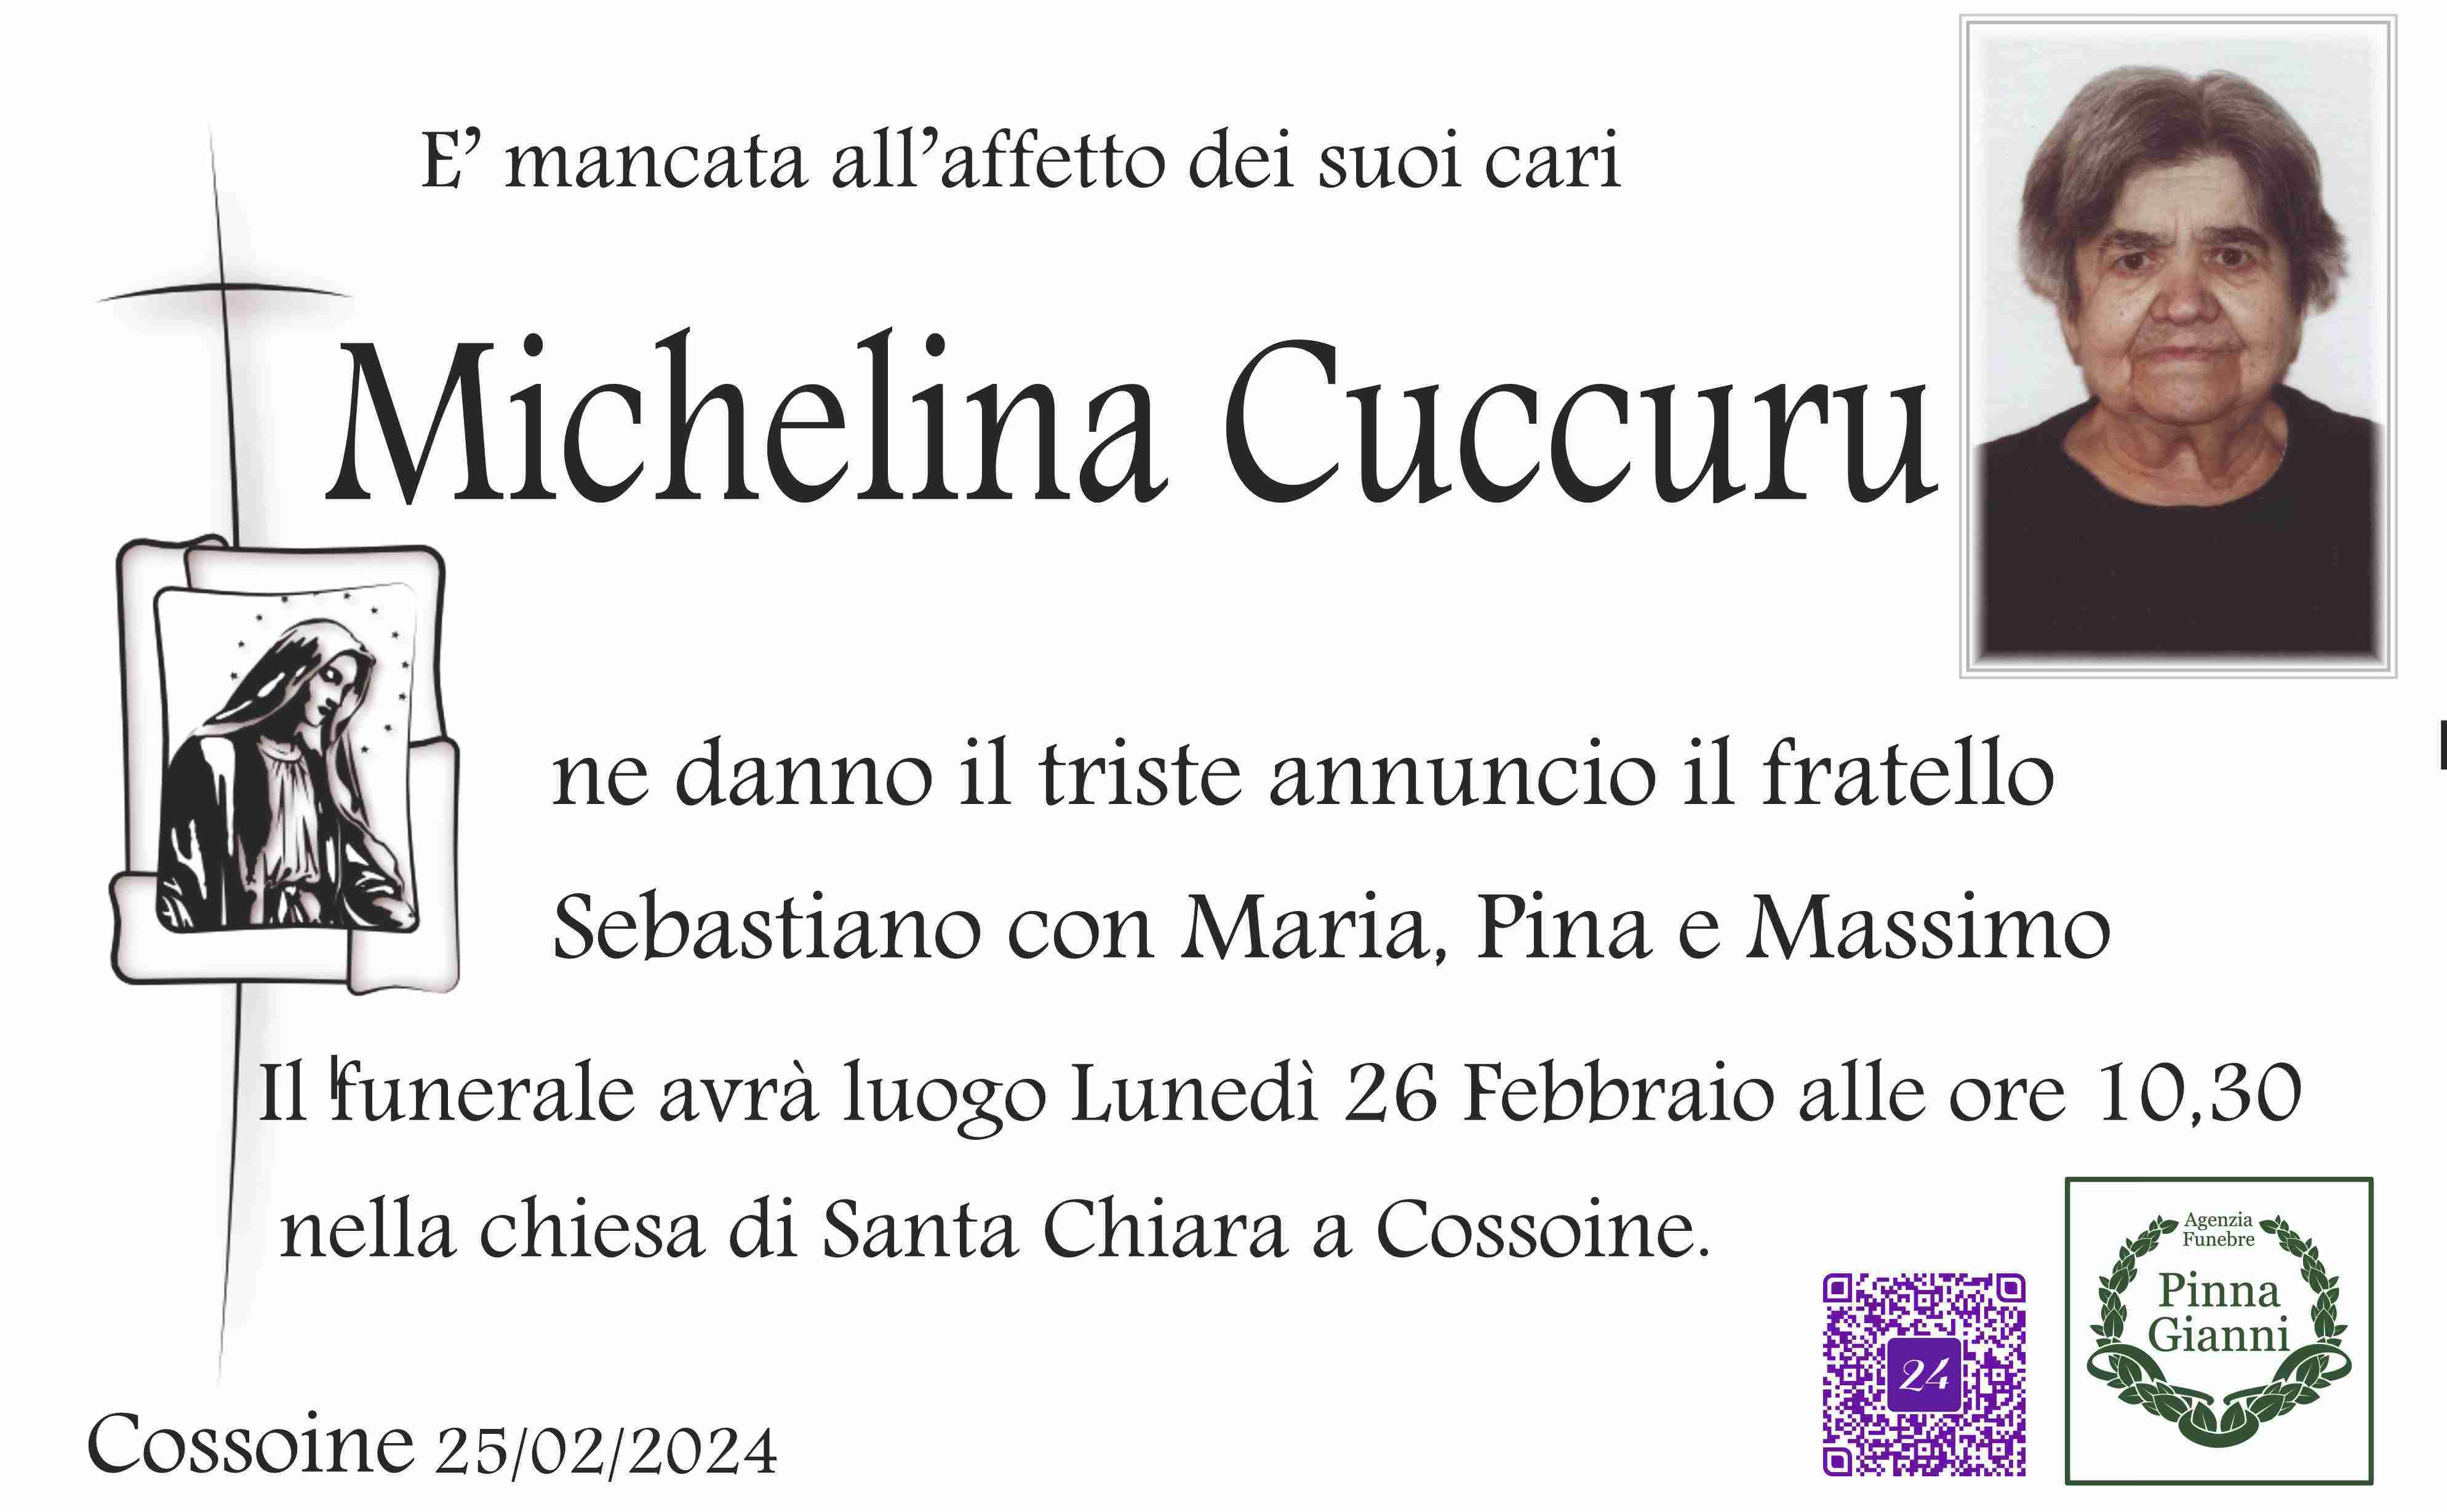 Michelina Cuccuru